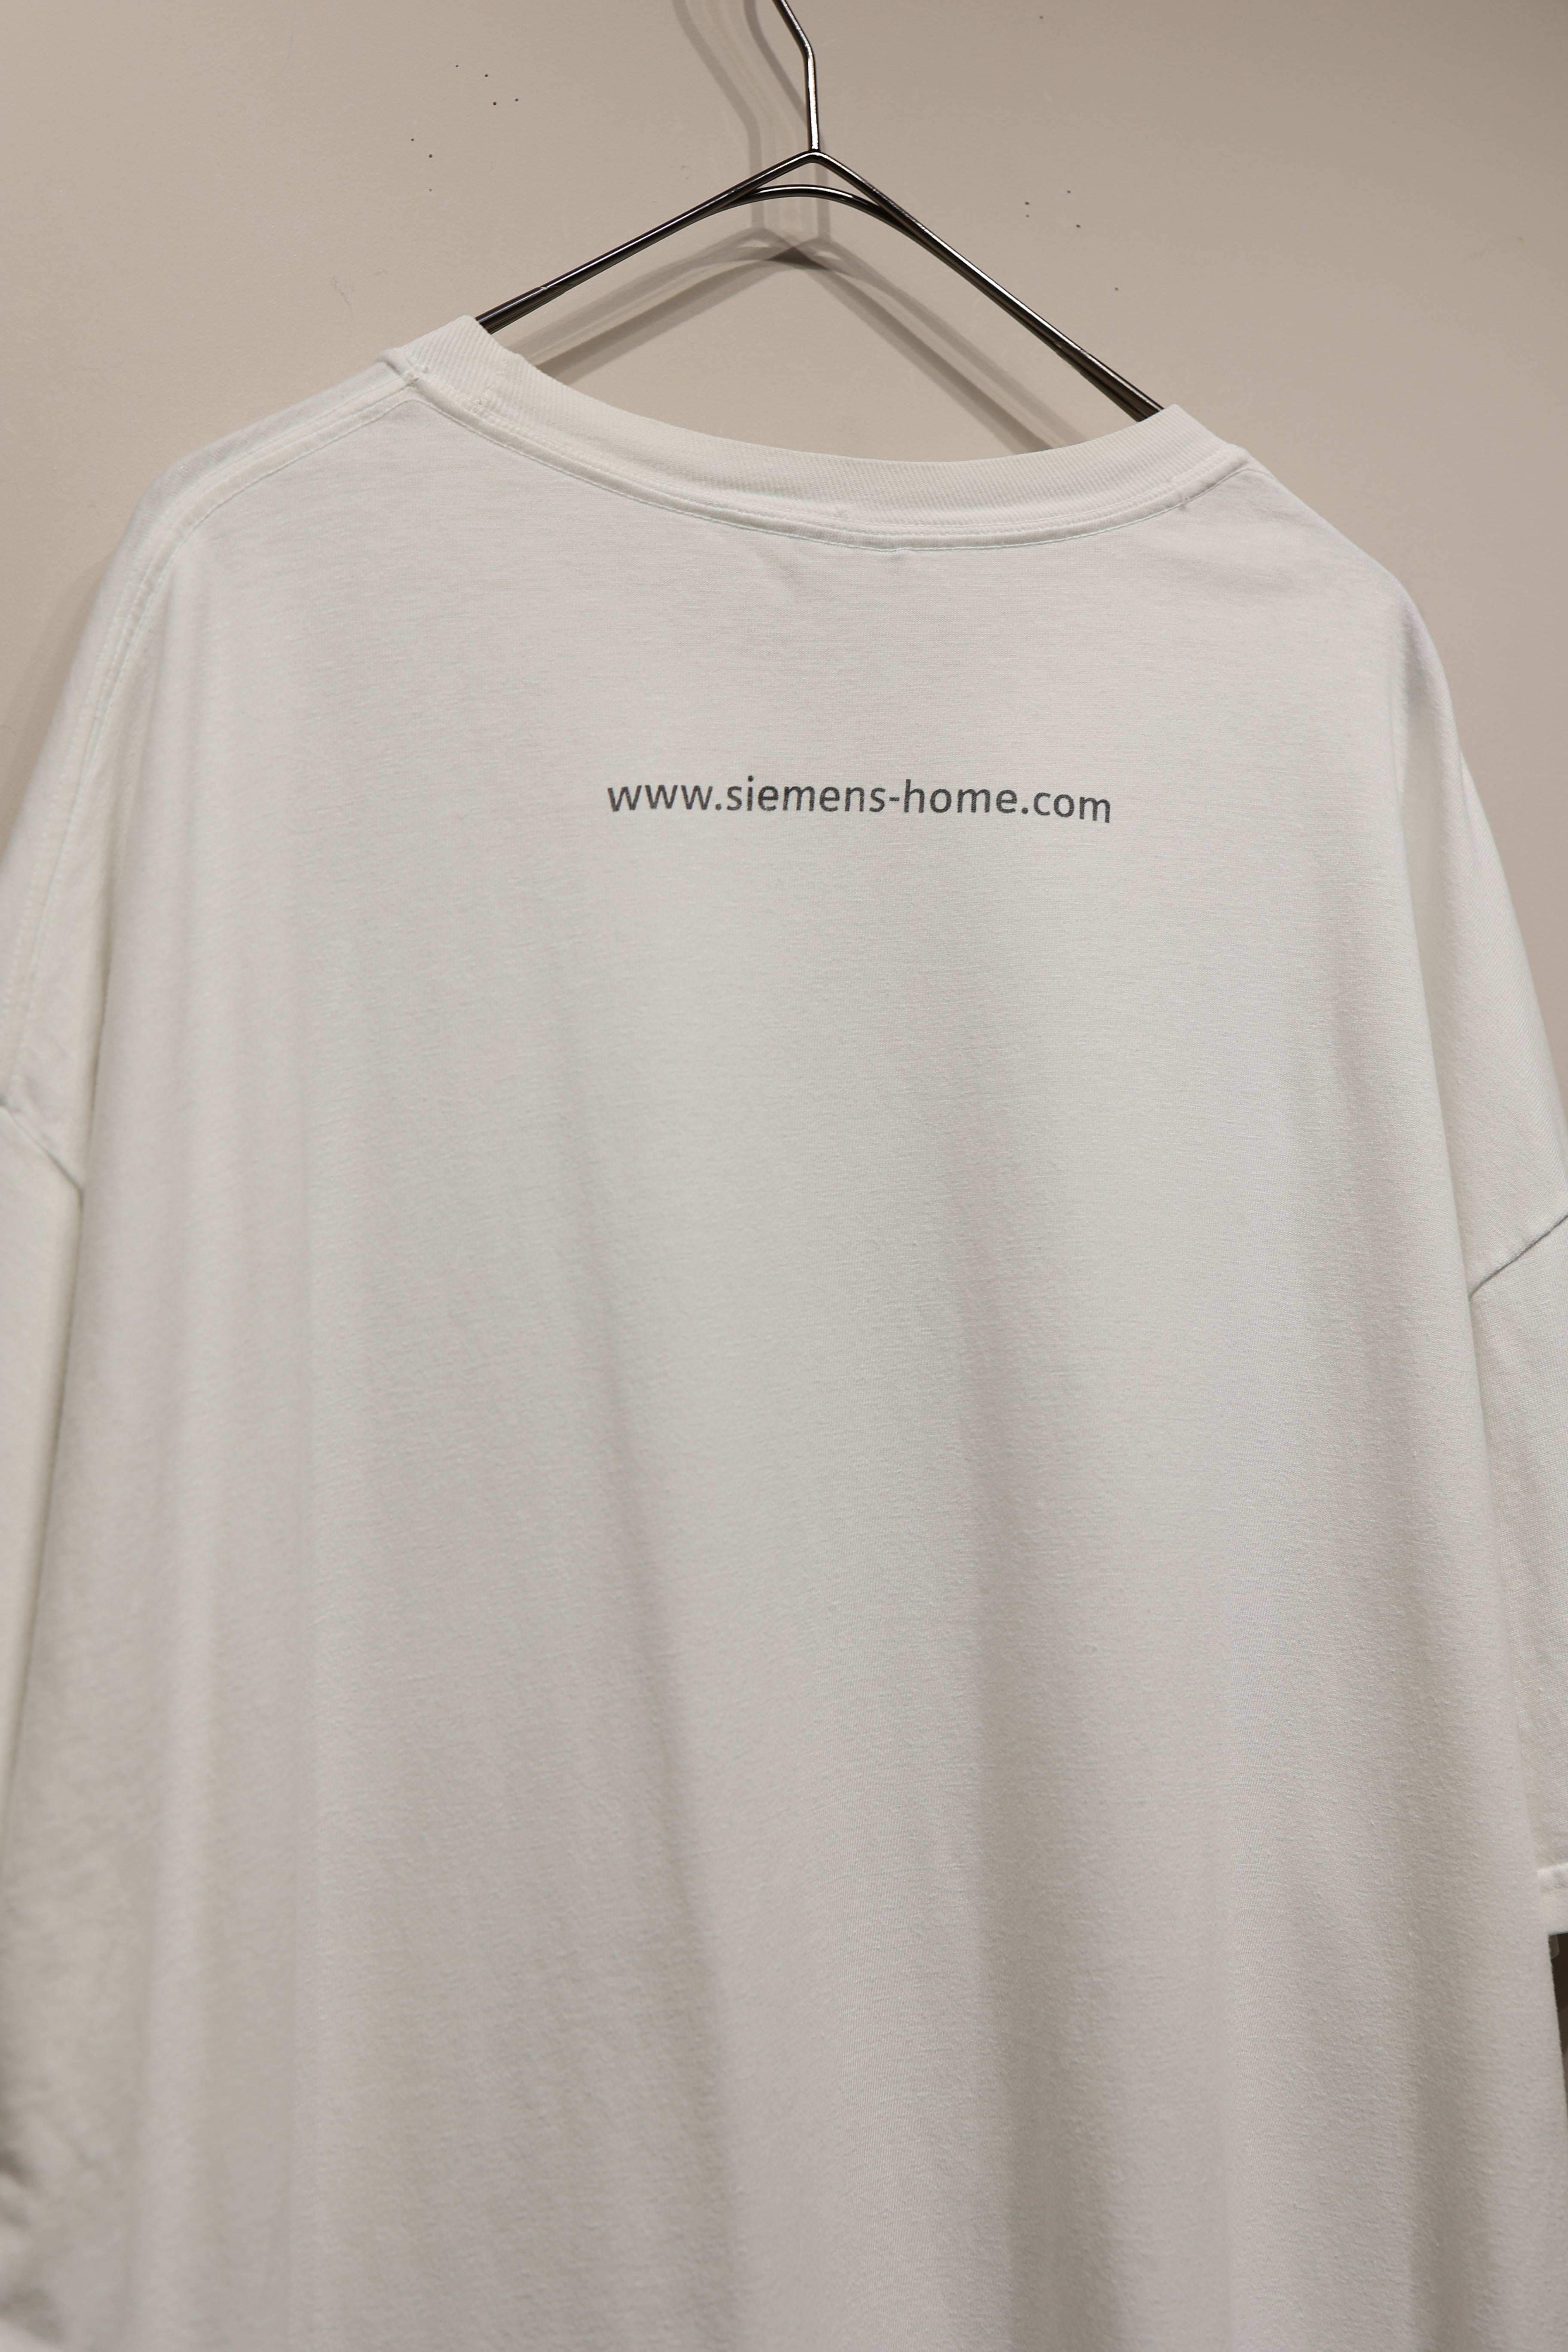 00's print t-shirt